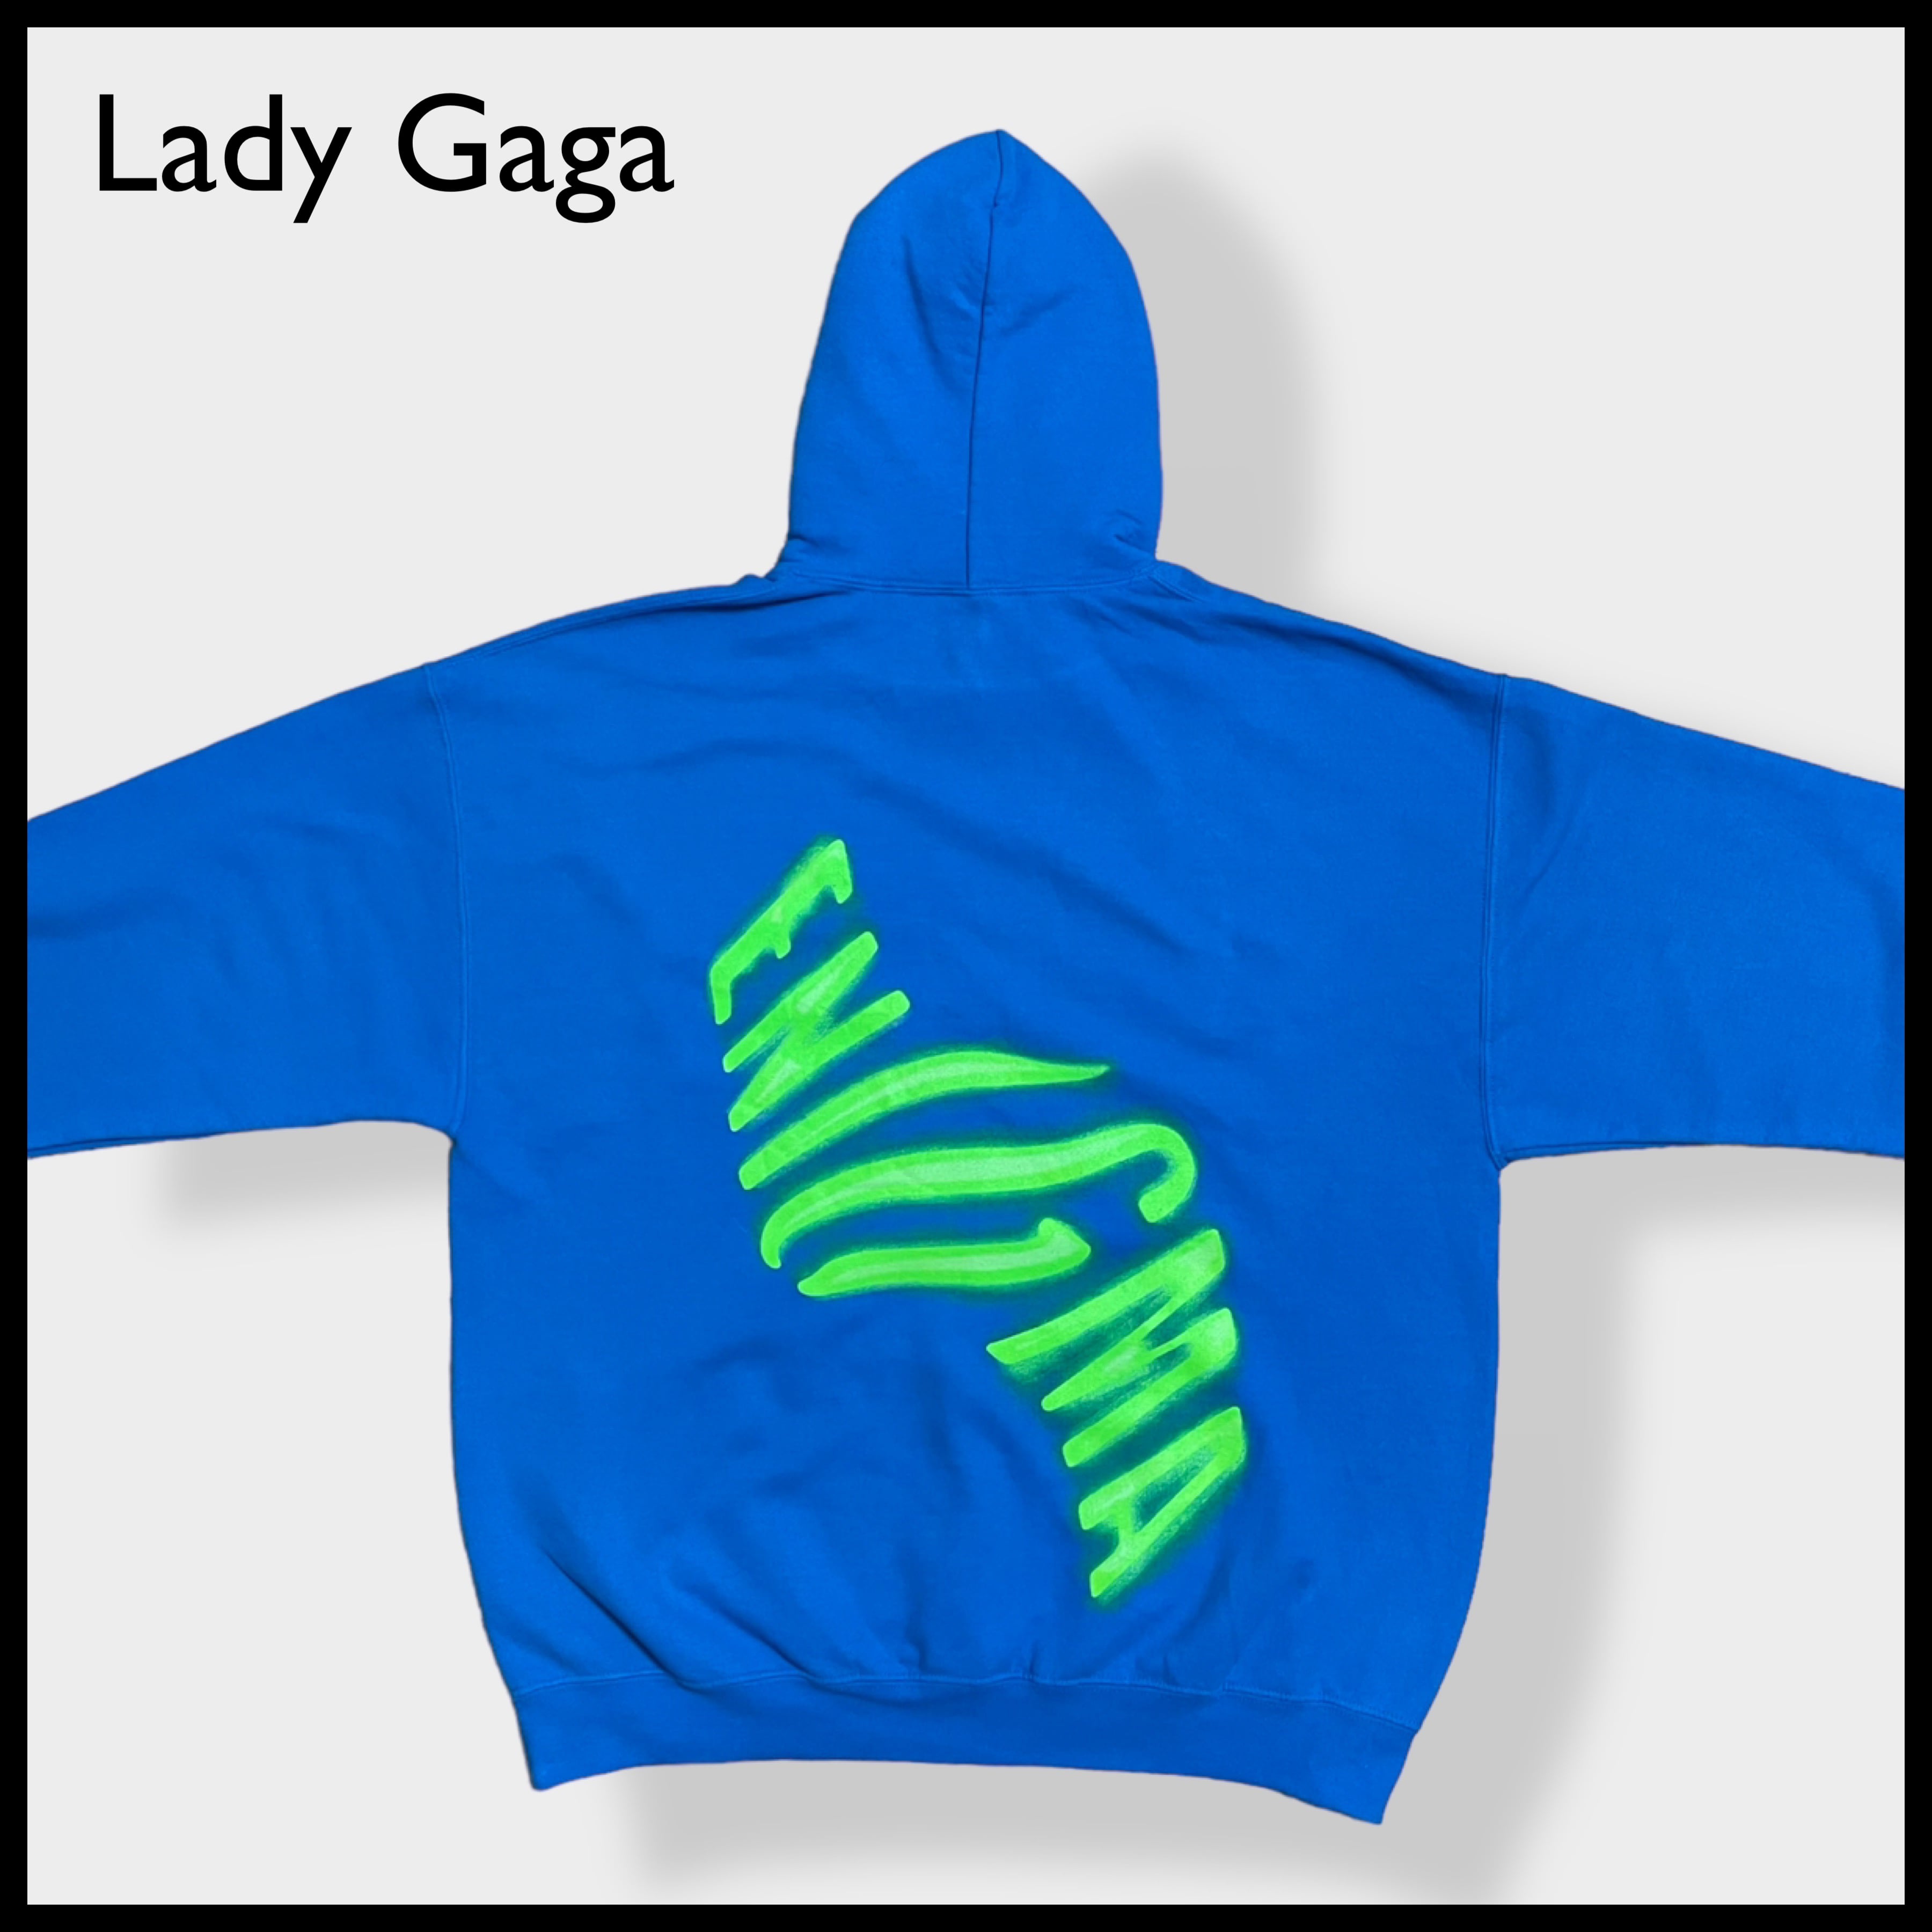 Lady Gaga】Enigma オフィシャル 公式 バックプリント ロゴ